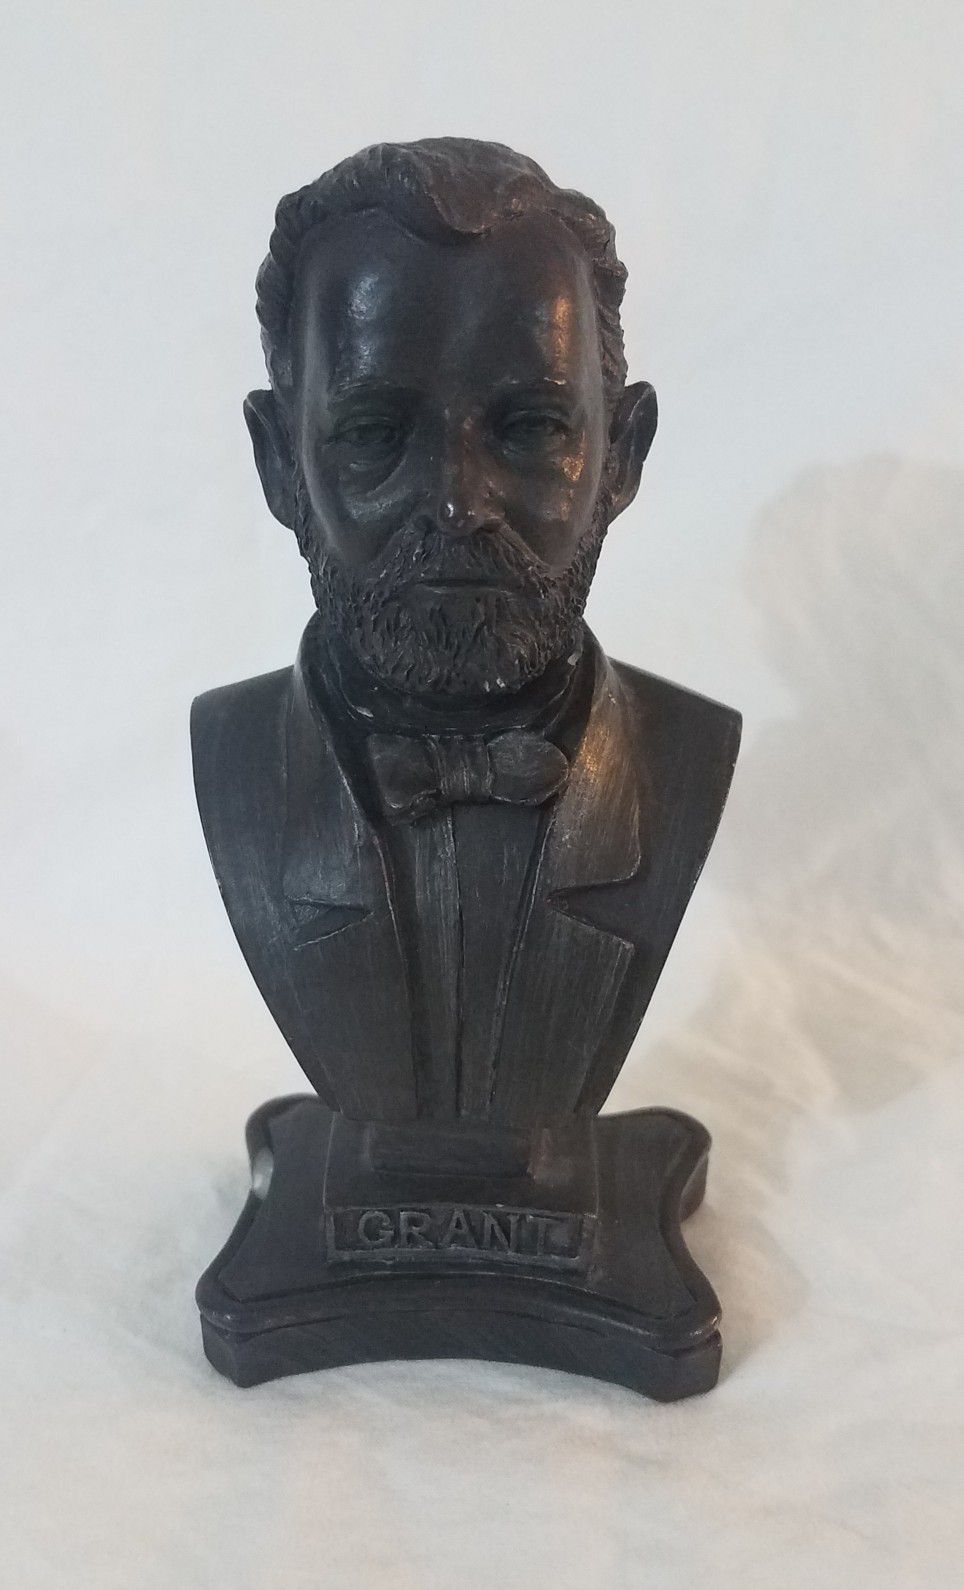 President Grant resin bust figure statue